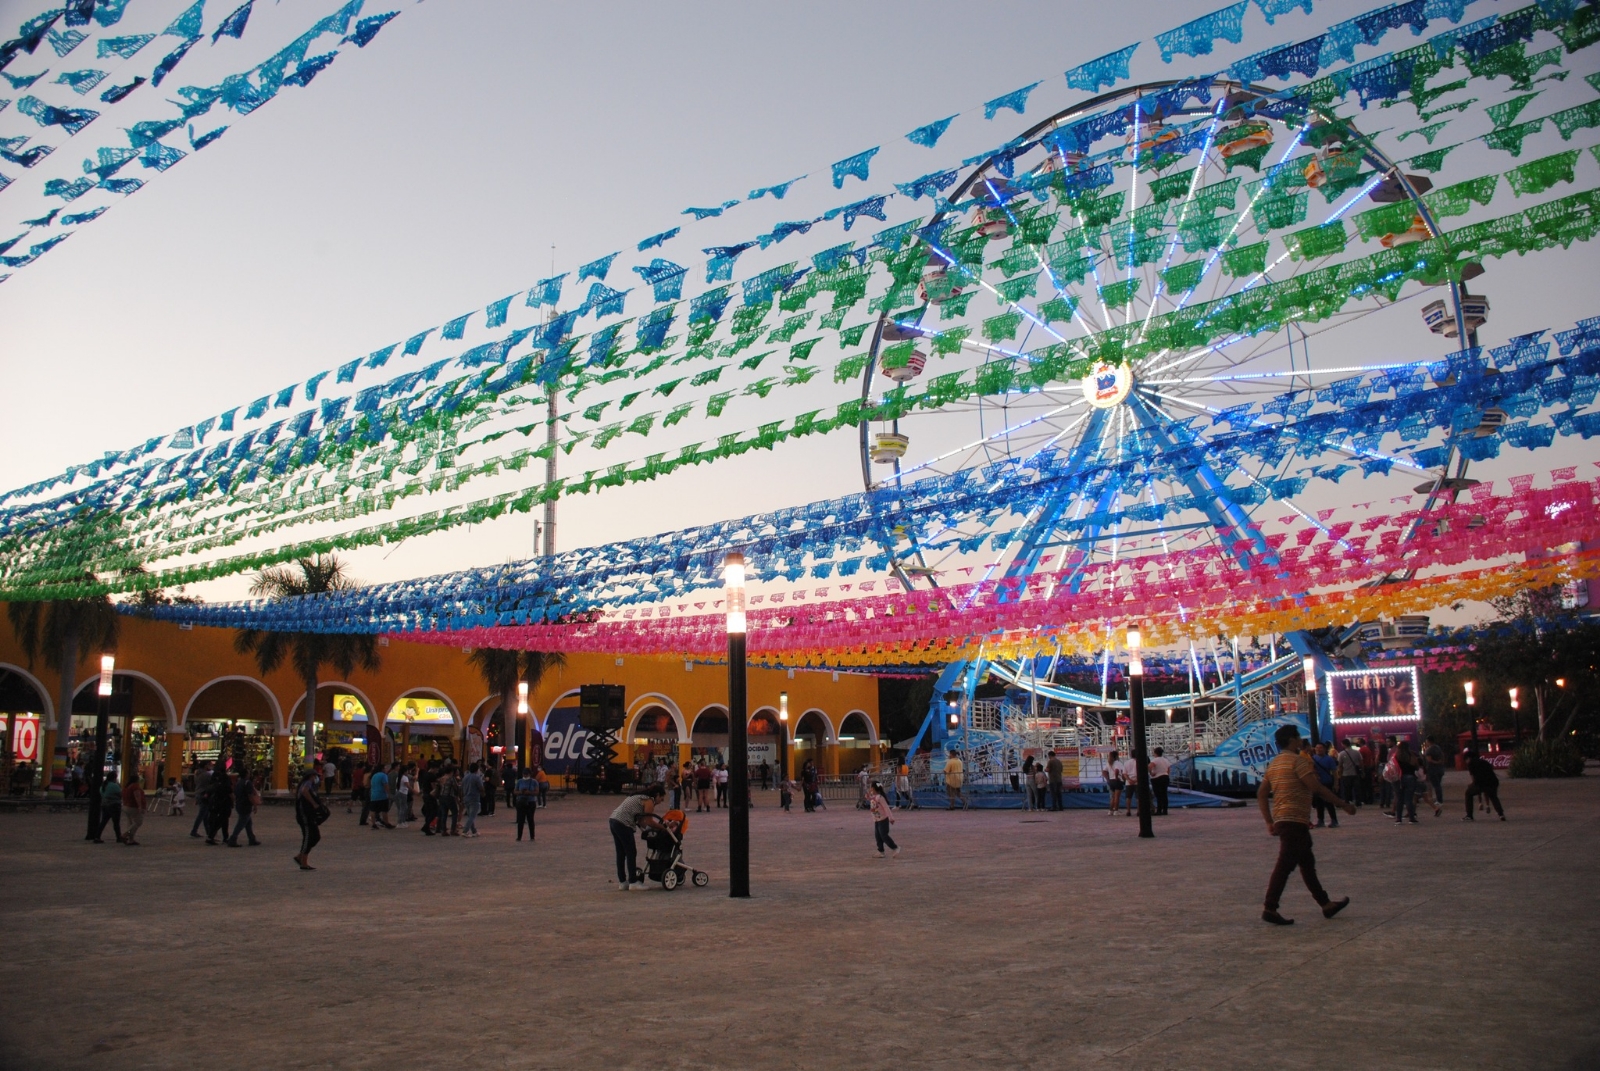 La Feria Yucatán Xmatkuil llegará a su fin este domingo 3 de diciembre